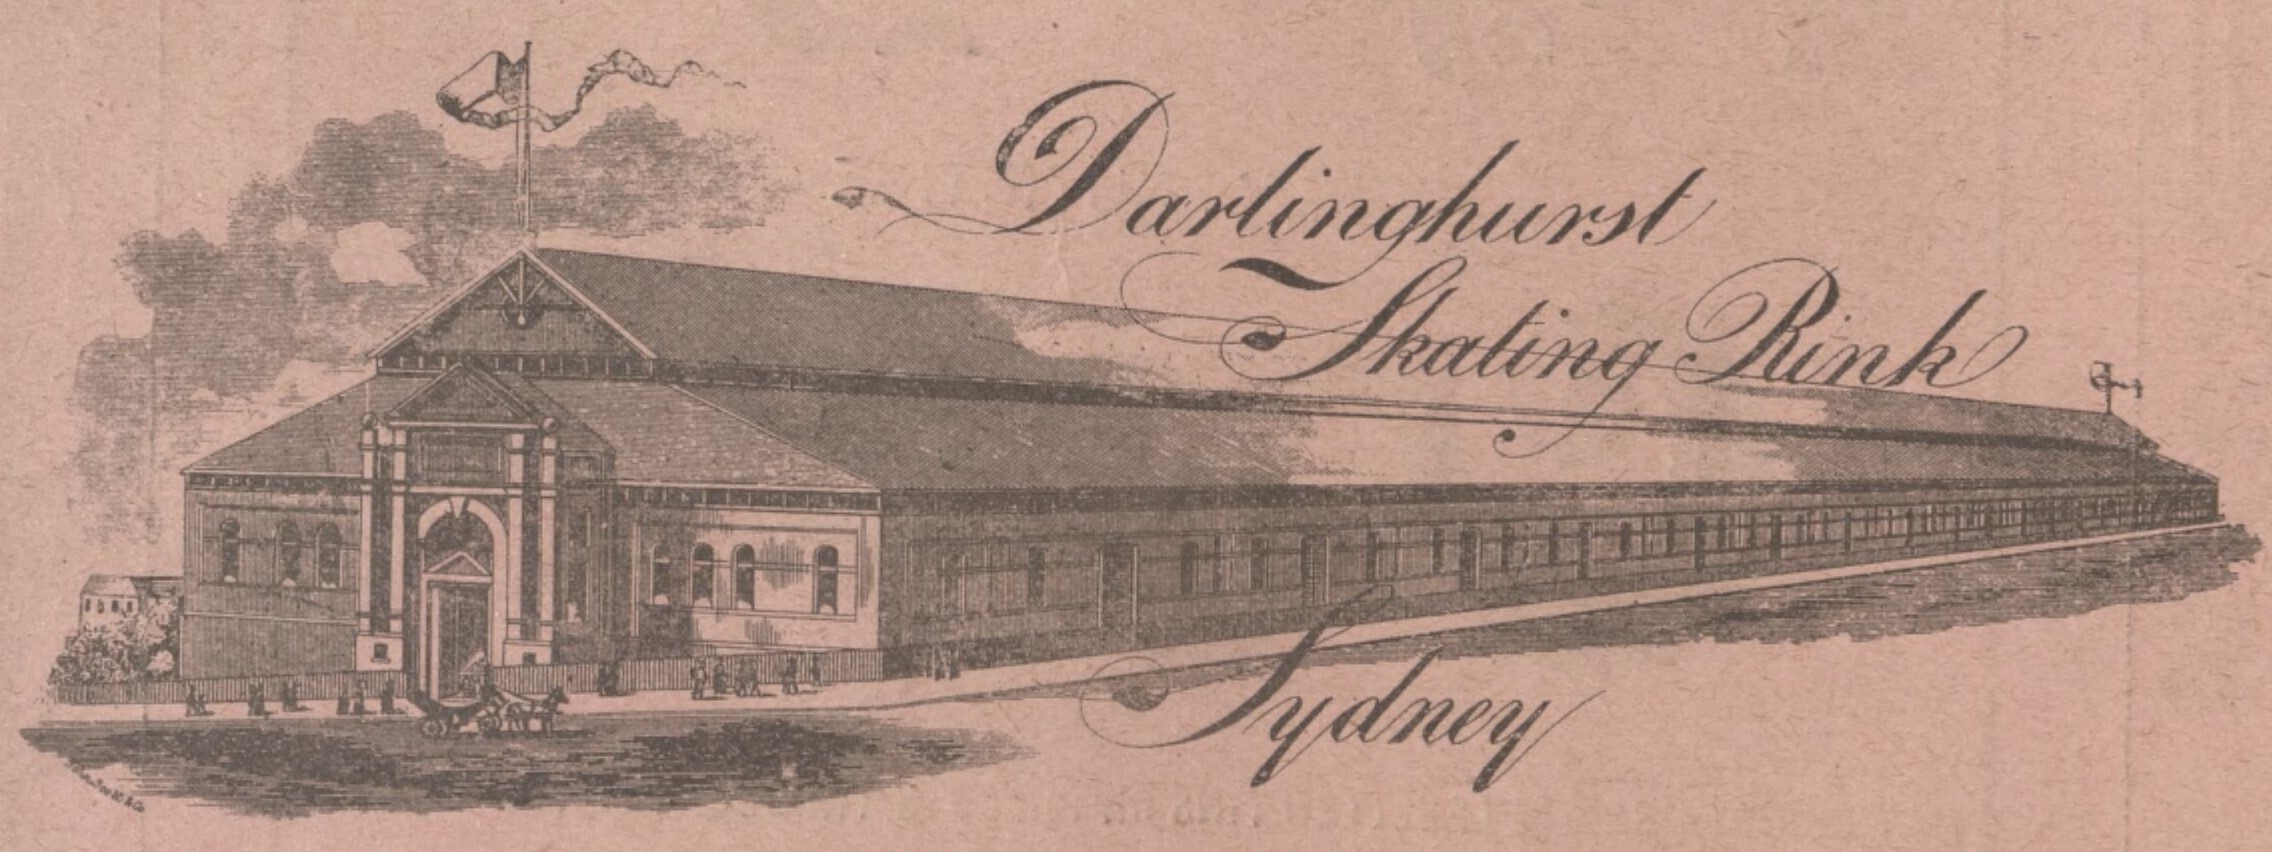 Illustration of Darlinghurst Skating Rink